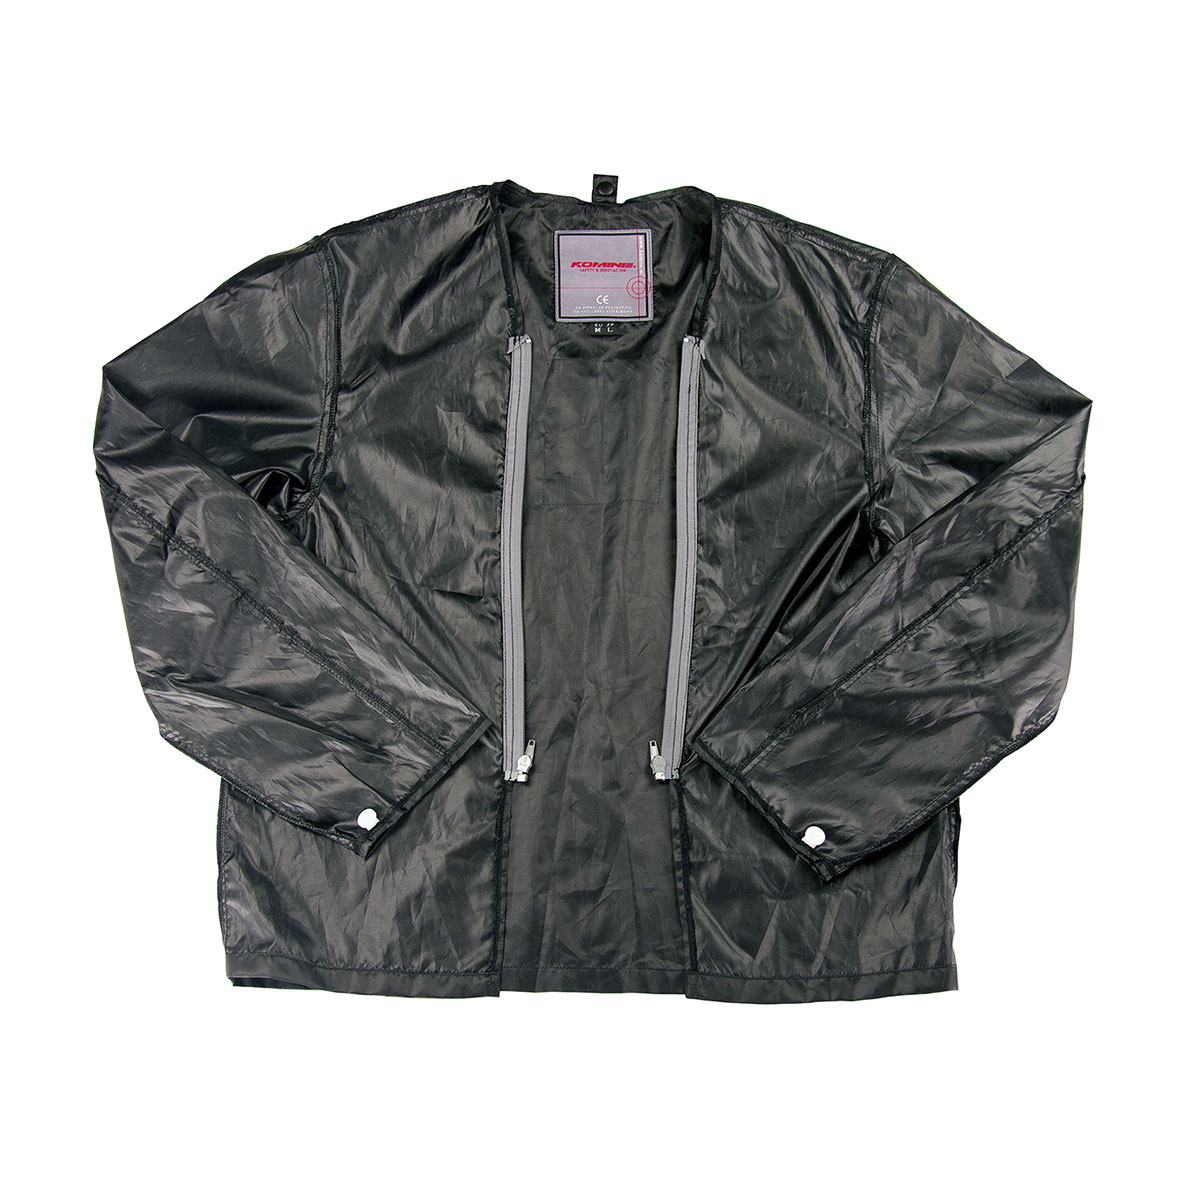 コミネ KOMINE バイク用 ジャケット Jacket JK-051 ウインドプルーフライニングジャケット ブラック 黒 Mサイズ 07-051/BK/M